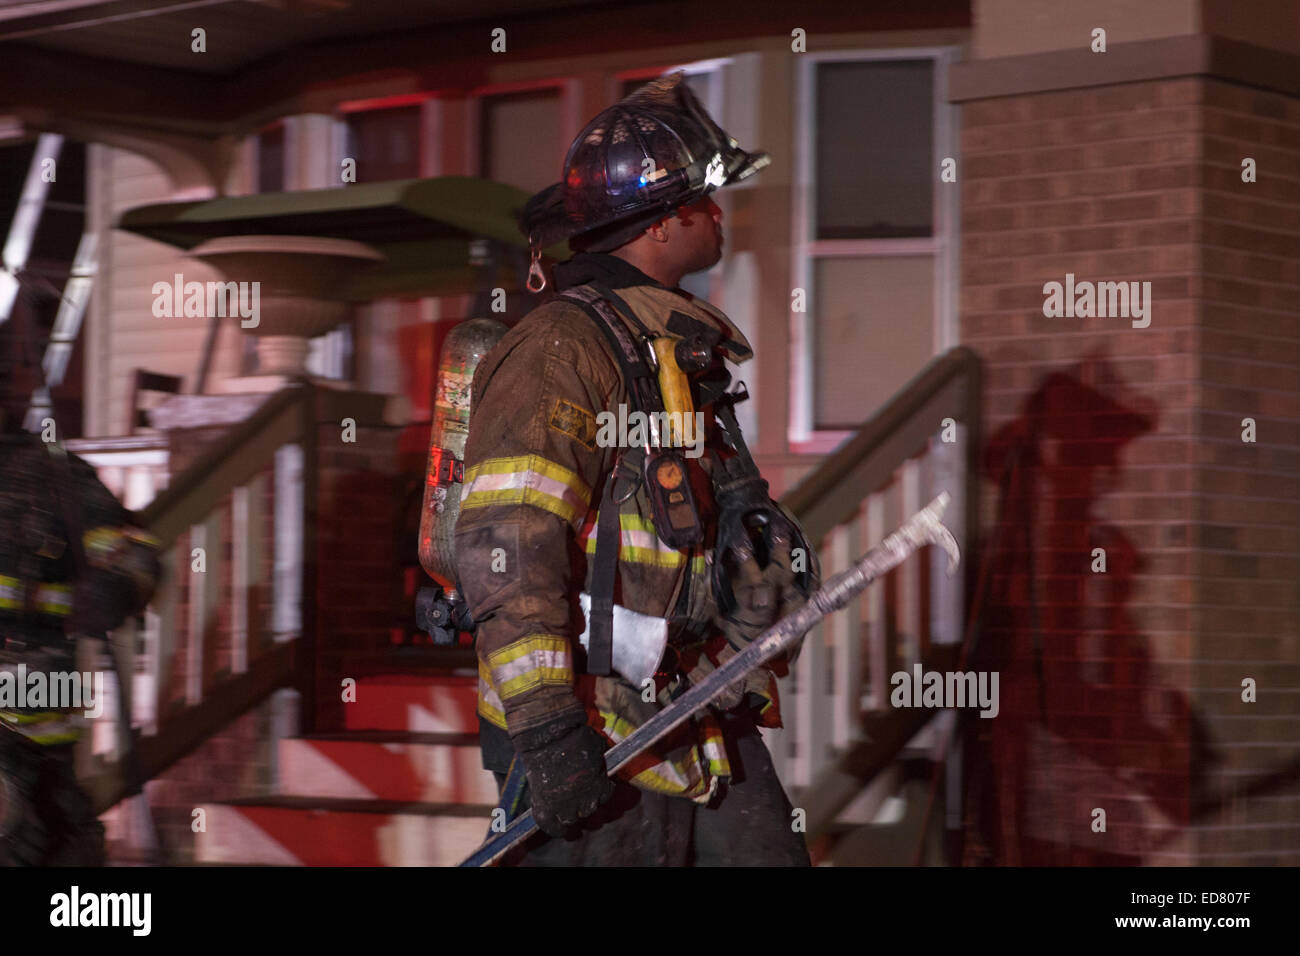 El Departamento de Bomberos de Milwaukee bombero americano africano en una escena de fuego Foto de stock